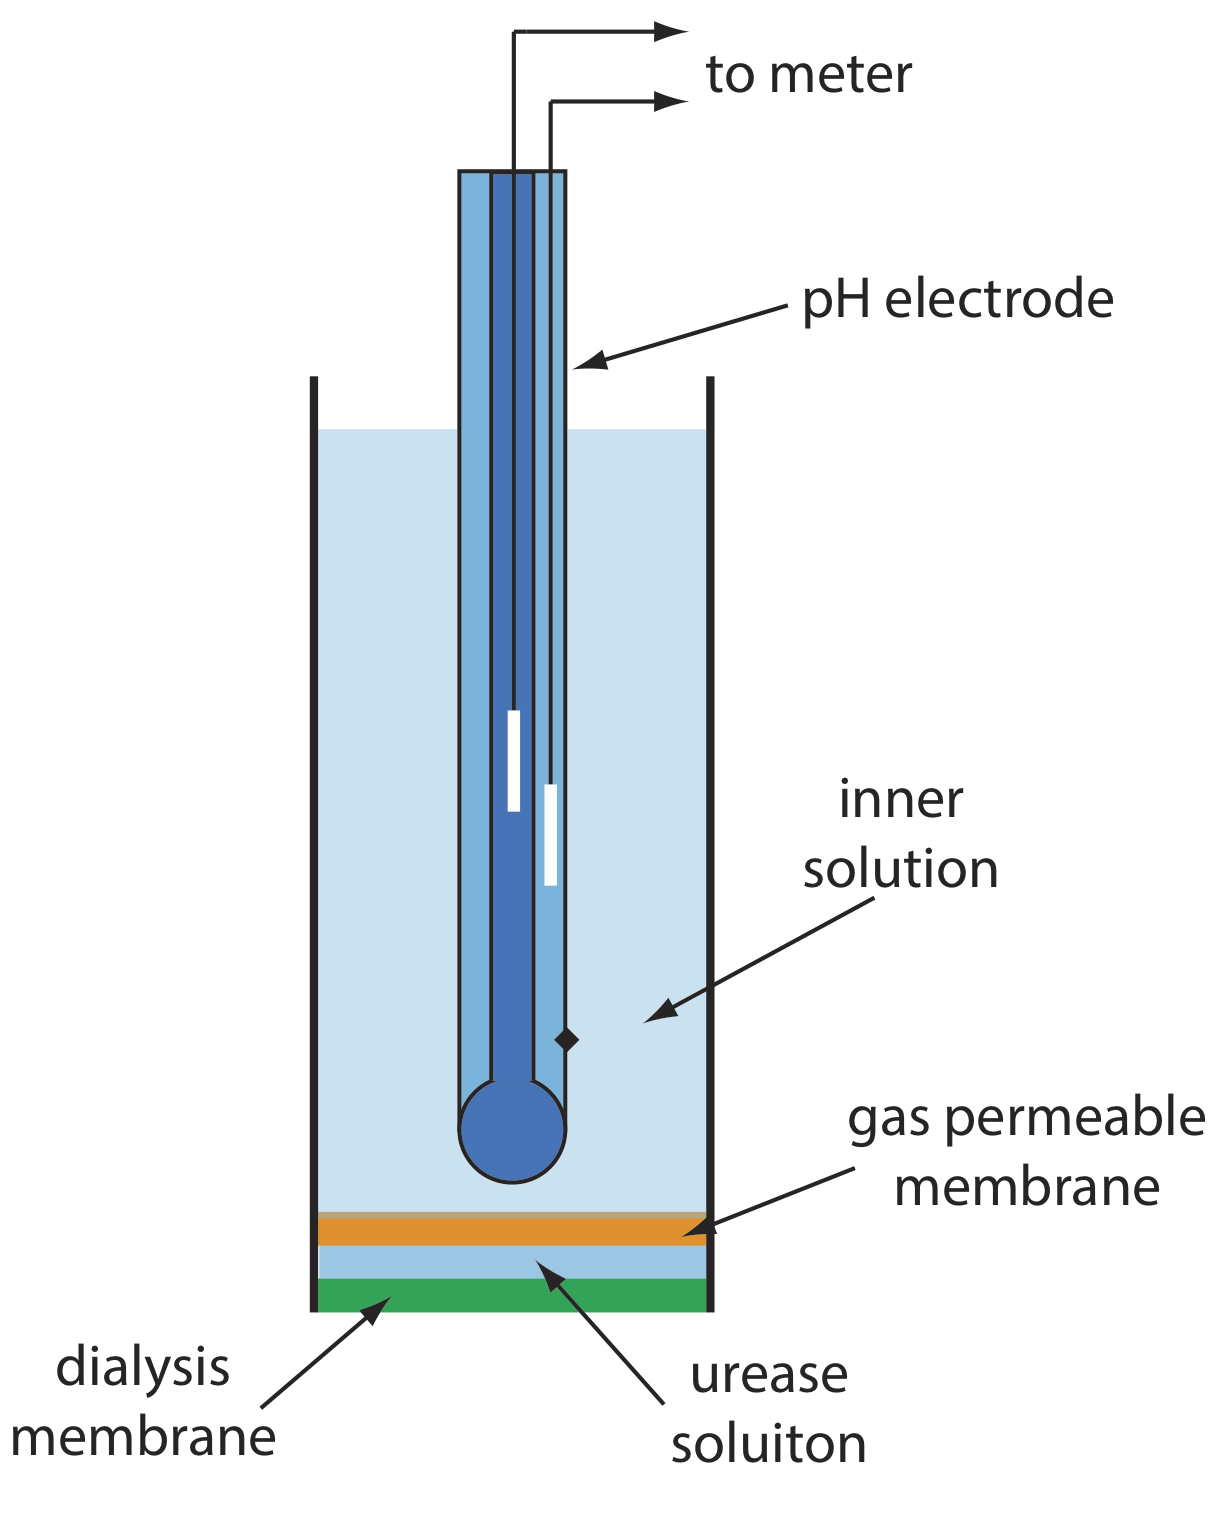 El biosensor consiste en una membrana de diálisis, solución de ureasa, membrana permeable a los gases, solución interna, electrodo de pH y lleva a un medidor.